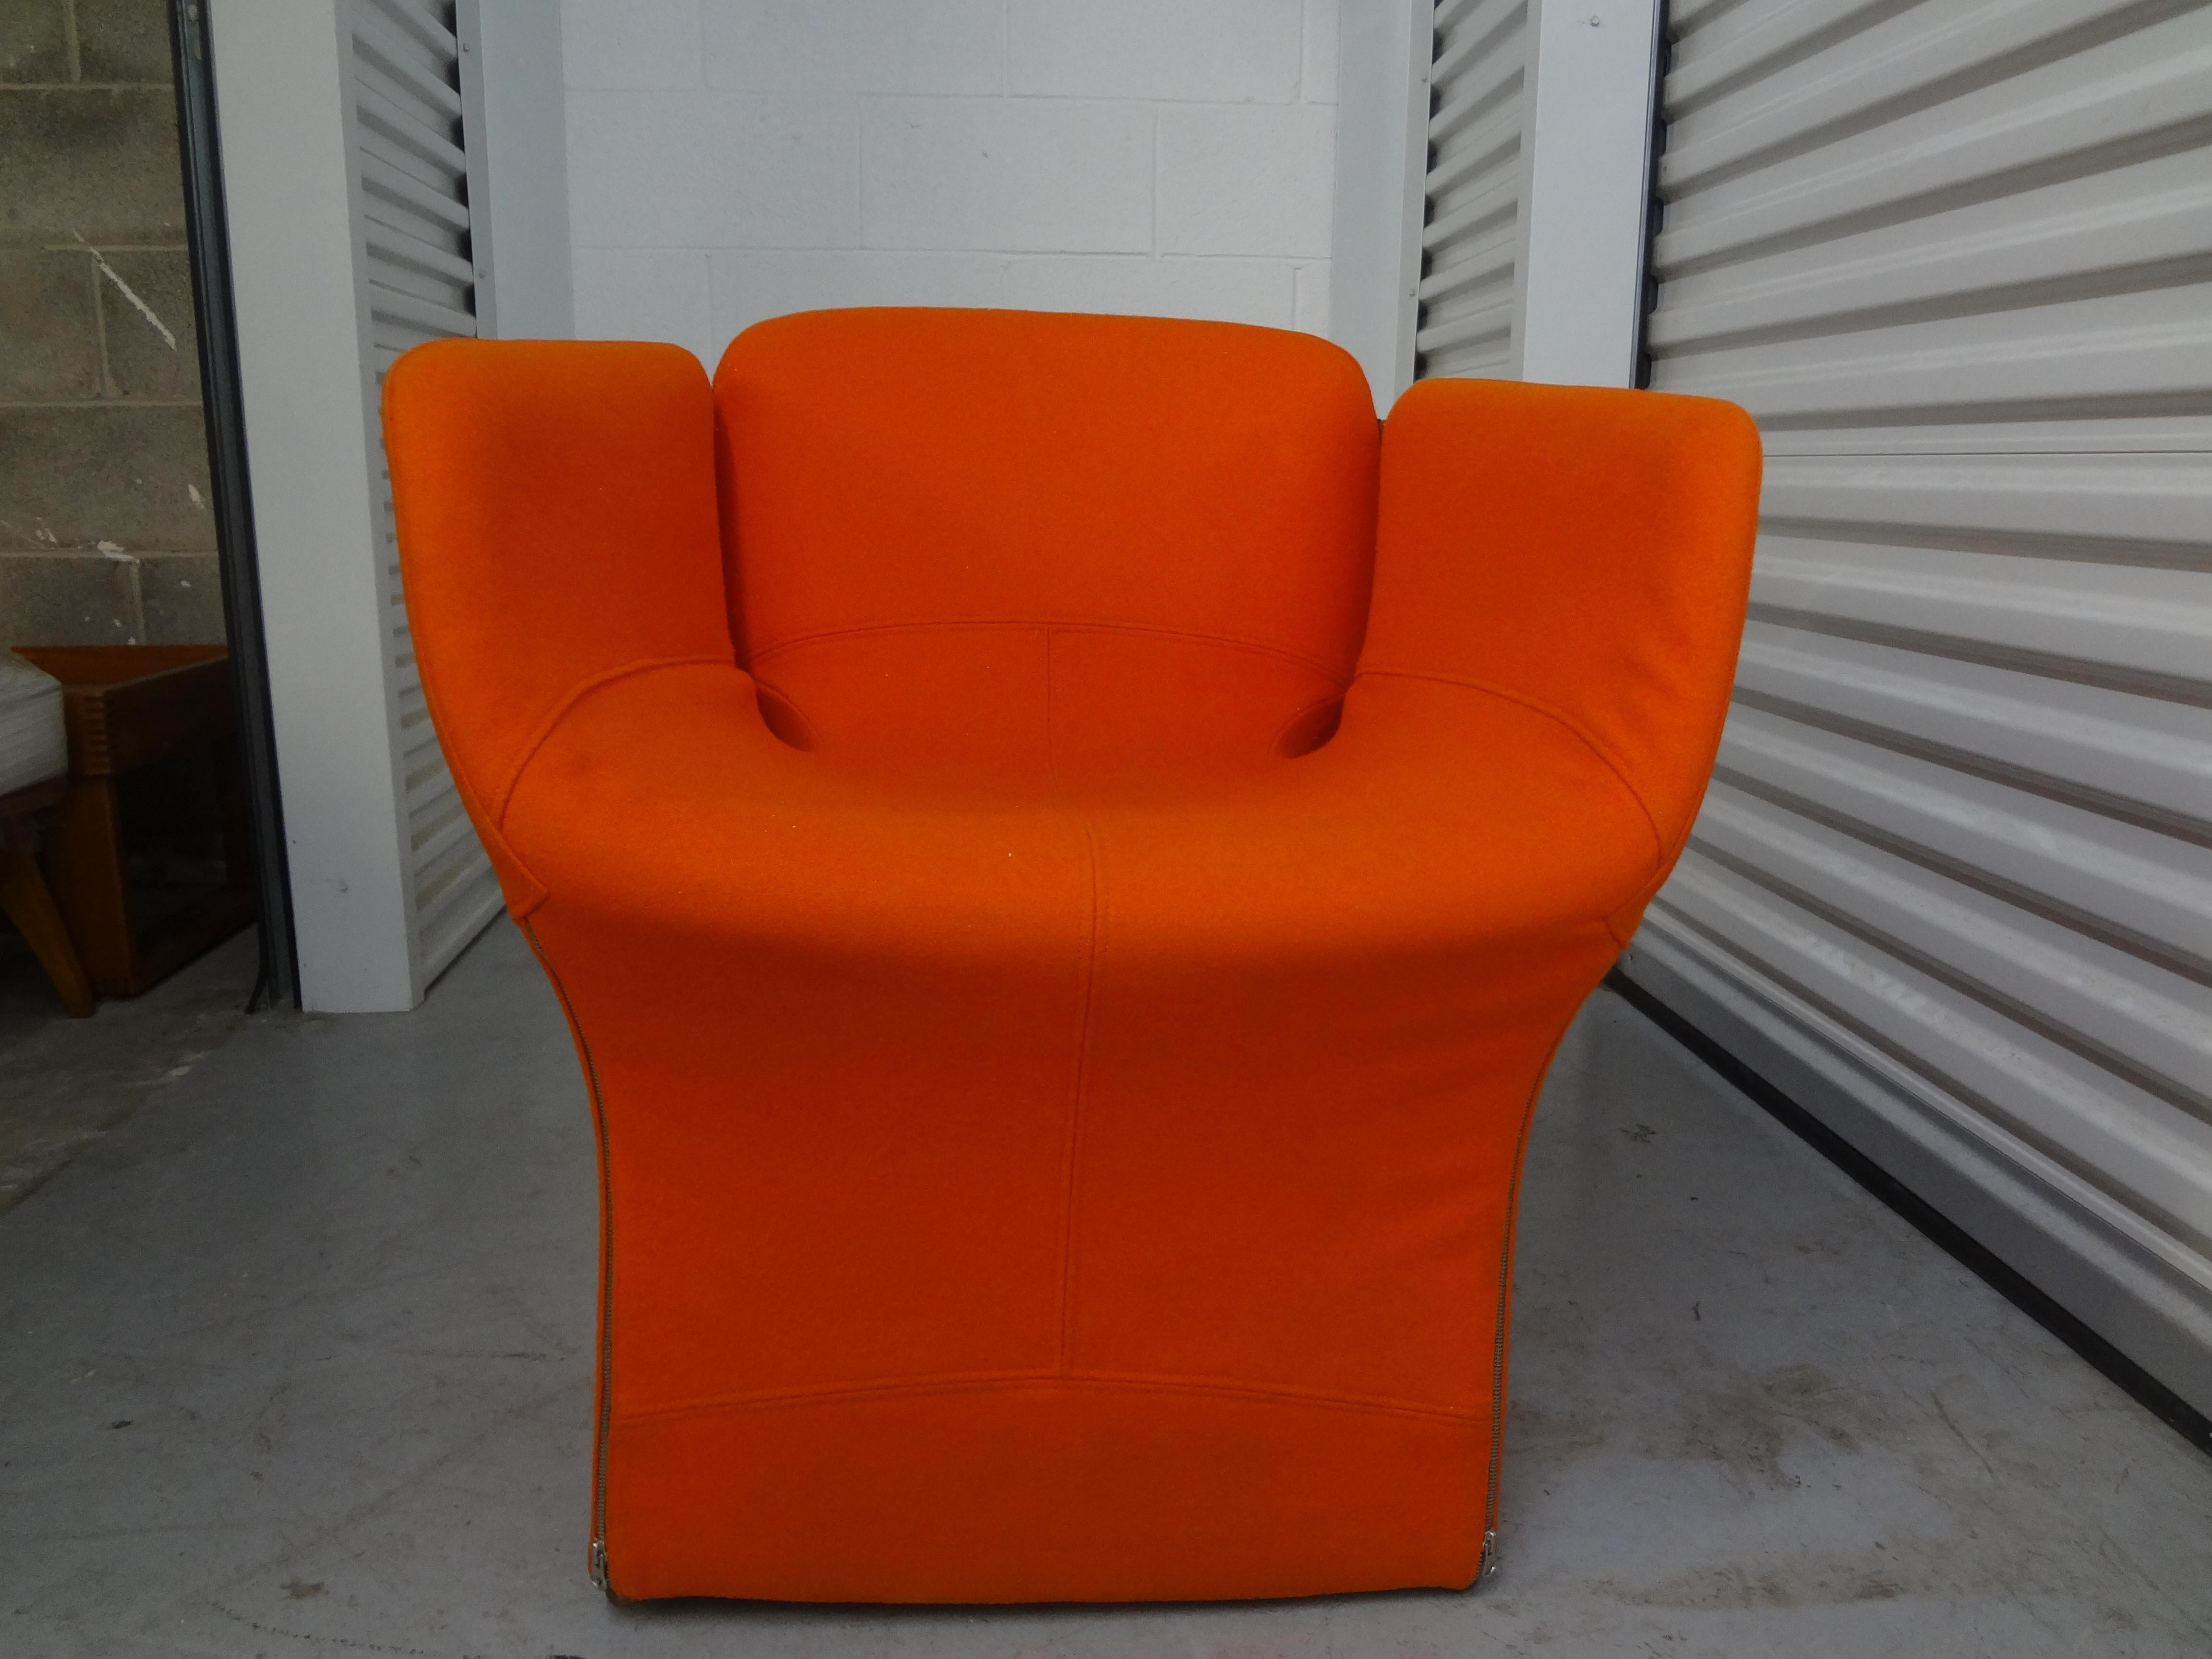 Ein Paar italienische moderne Stühle von Ron Arad für Moroso.
Tolles Paar italienischer moderner Stühle, Clubsessel, Loungesessel oder Beistellstühle wurden von Ron Arad für Moroso entworfen. Diese bequemen Stühle haben ihre ursprüngliche